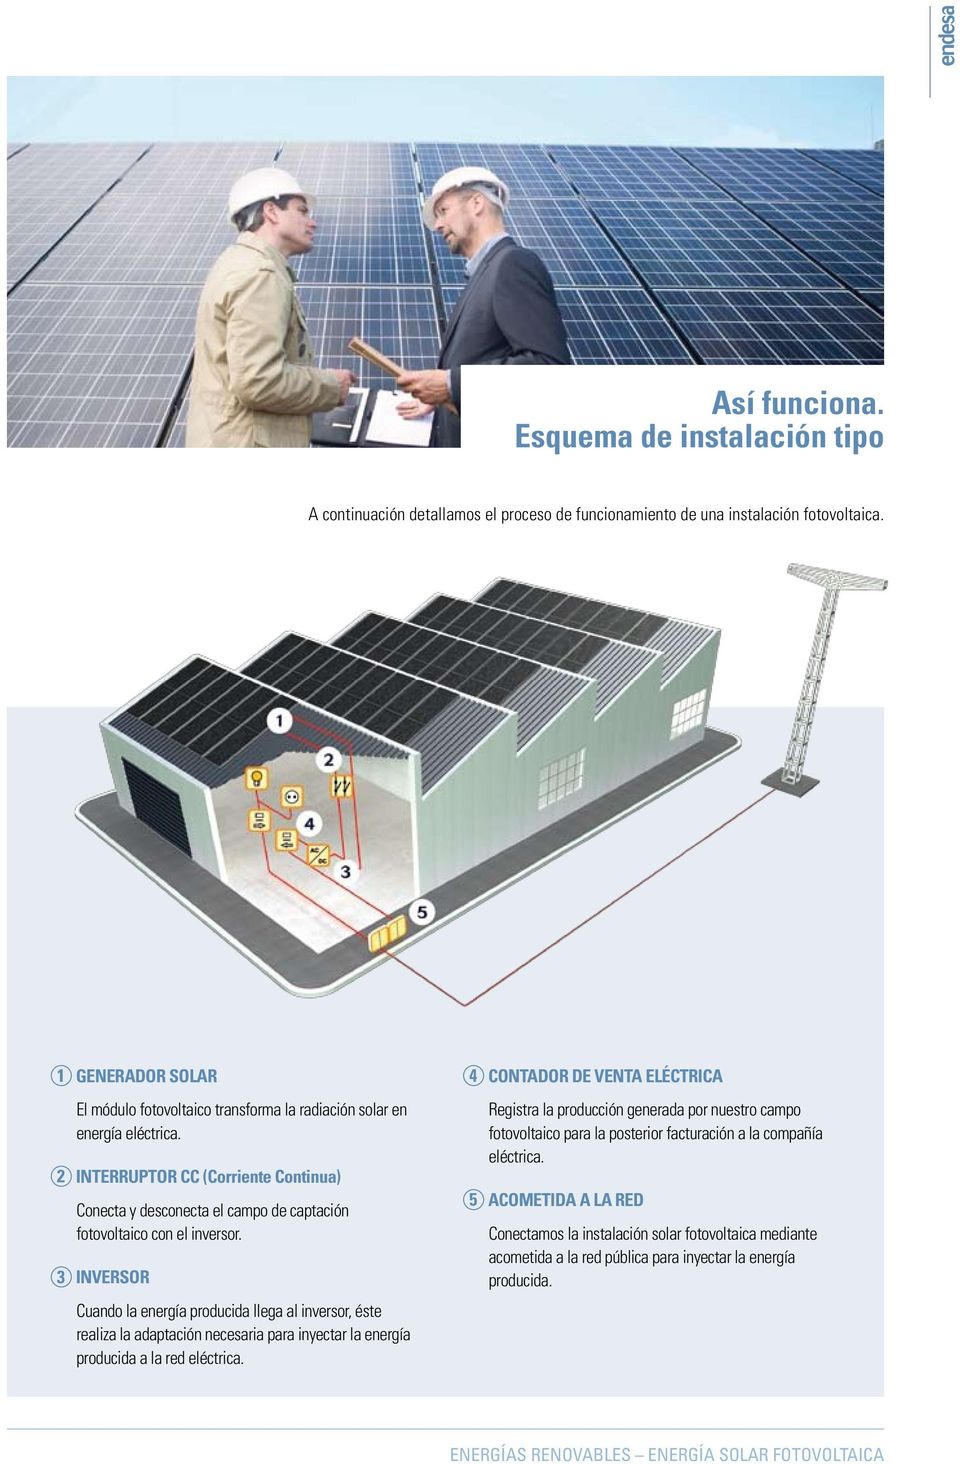 2 INTERRUPTOR CC (Corriente Continua) Conecta y desconecta el campo de captación fotovoltaico con el inversor.